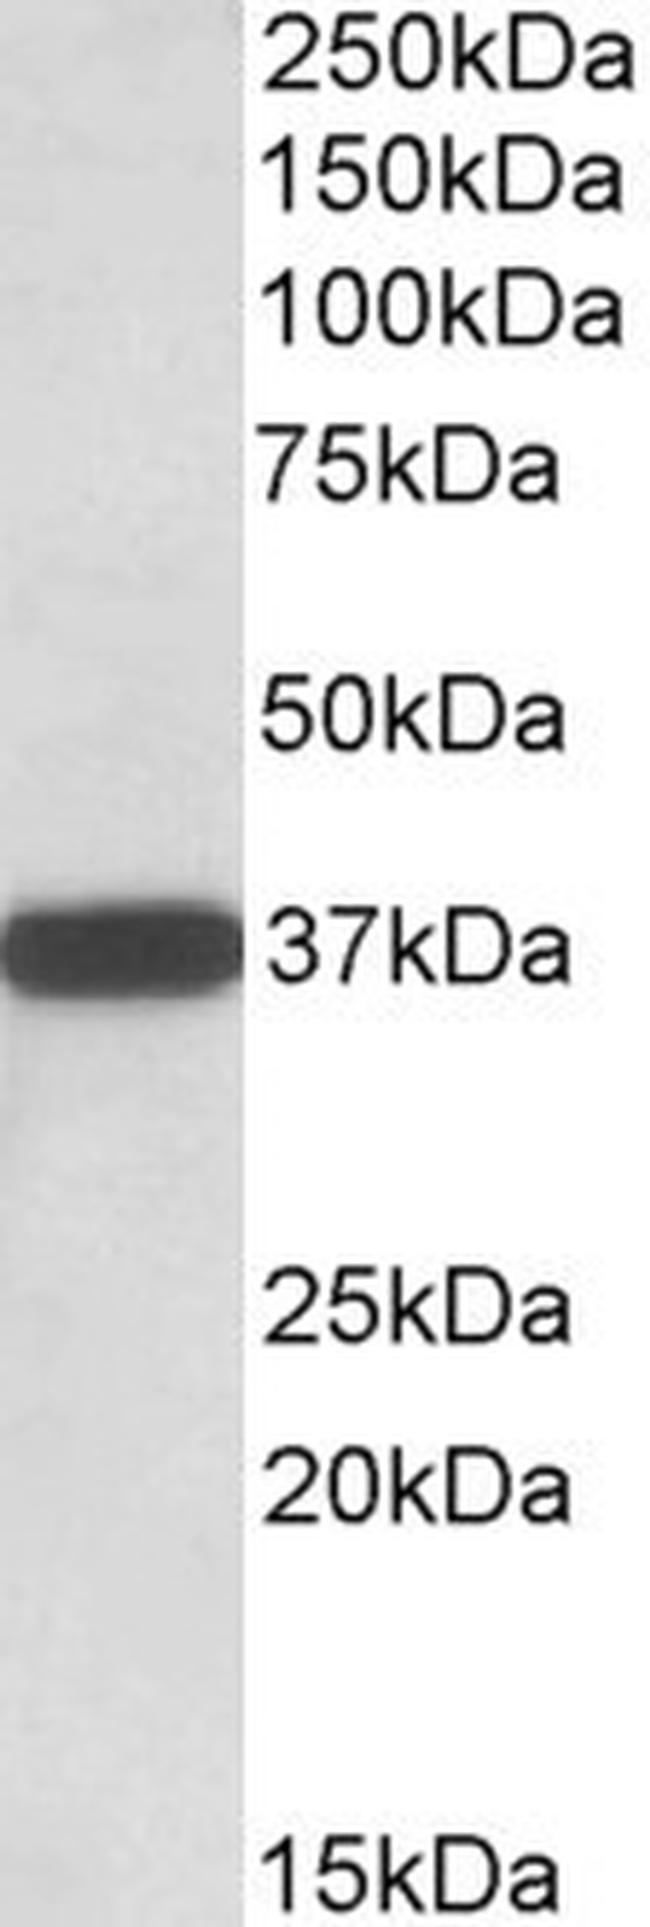 CYB5R3 Antibody in Western Blot (WB)